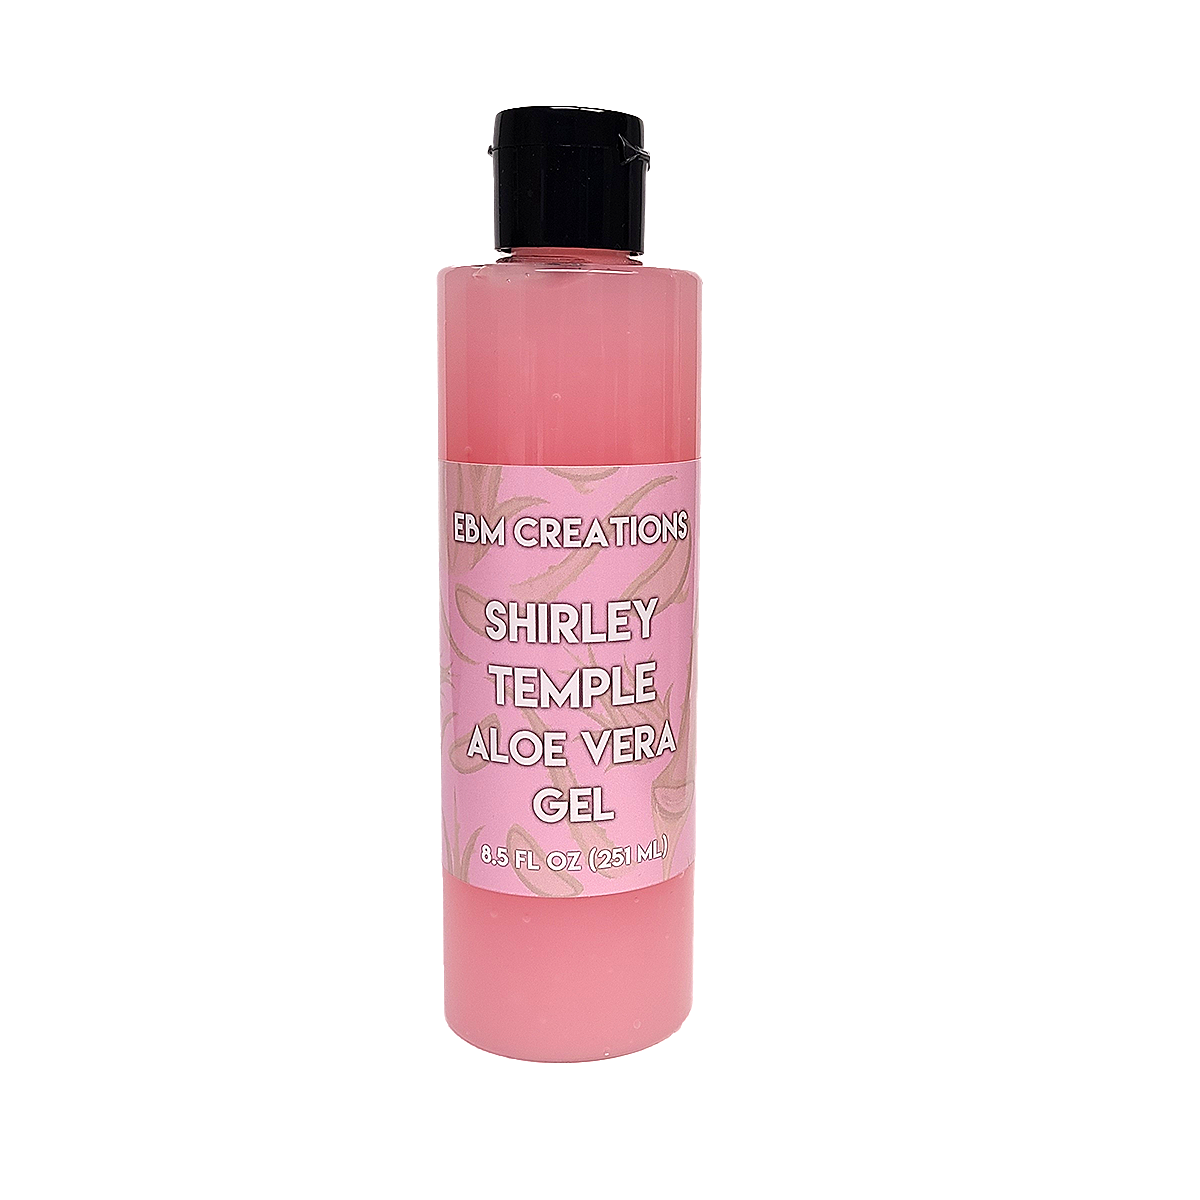 Shirley Temple Aloe Vera Gel - 8.5oz Bottle